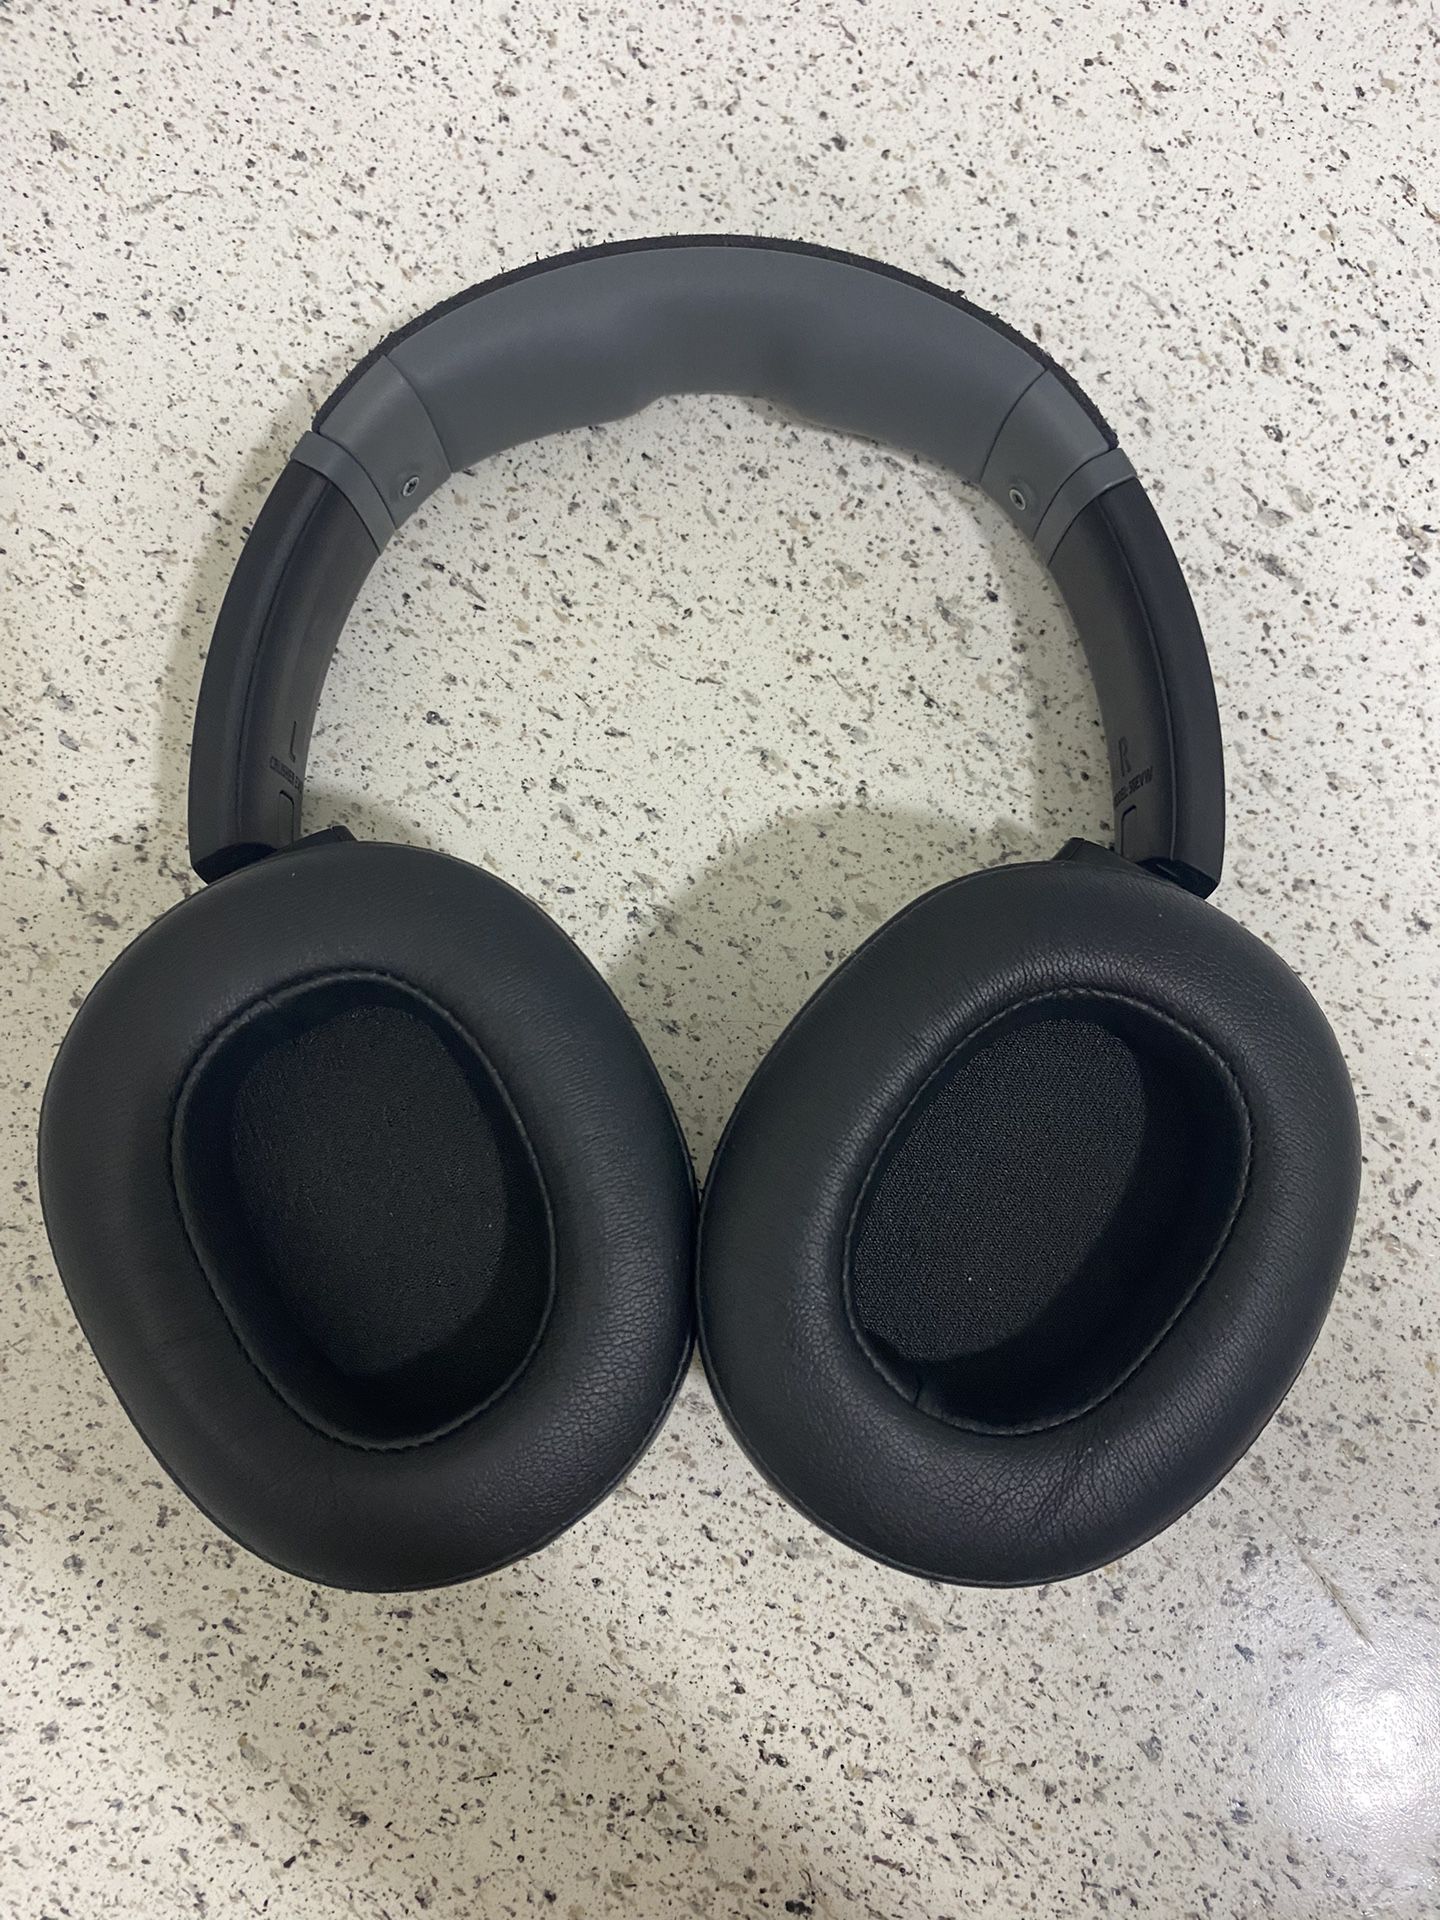 Skullcandy Crusher Evo Wireless Headphones 